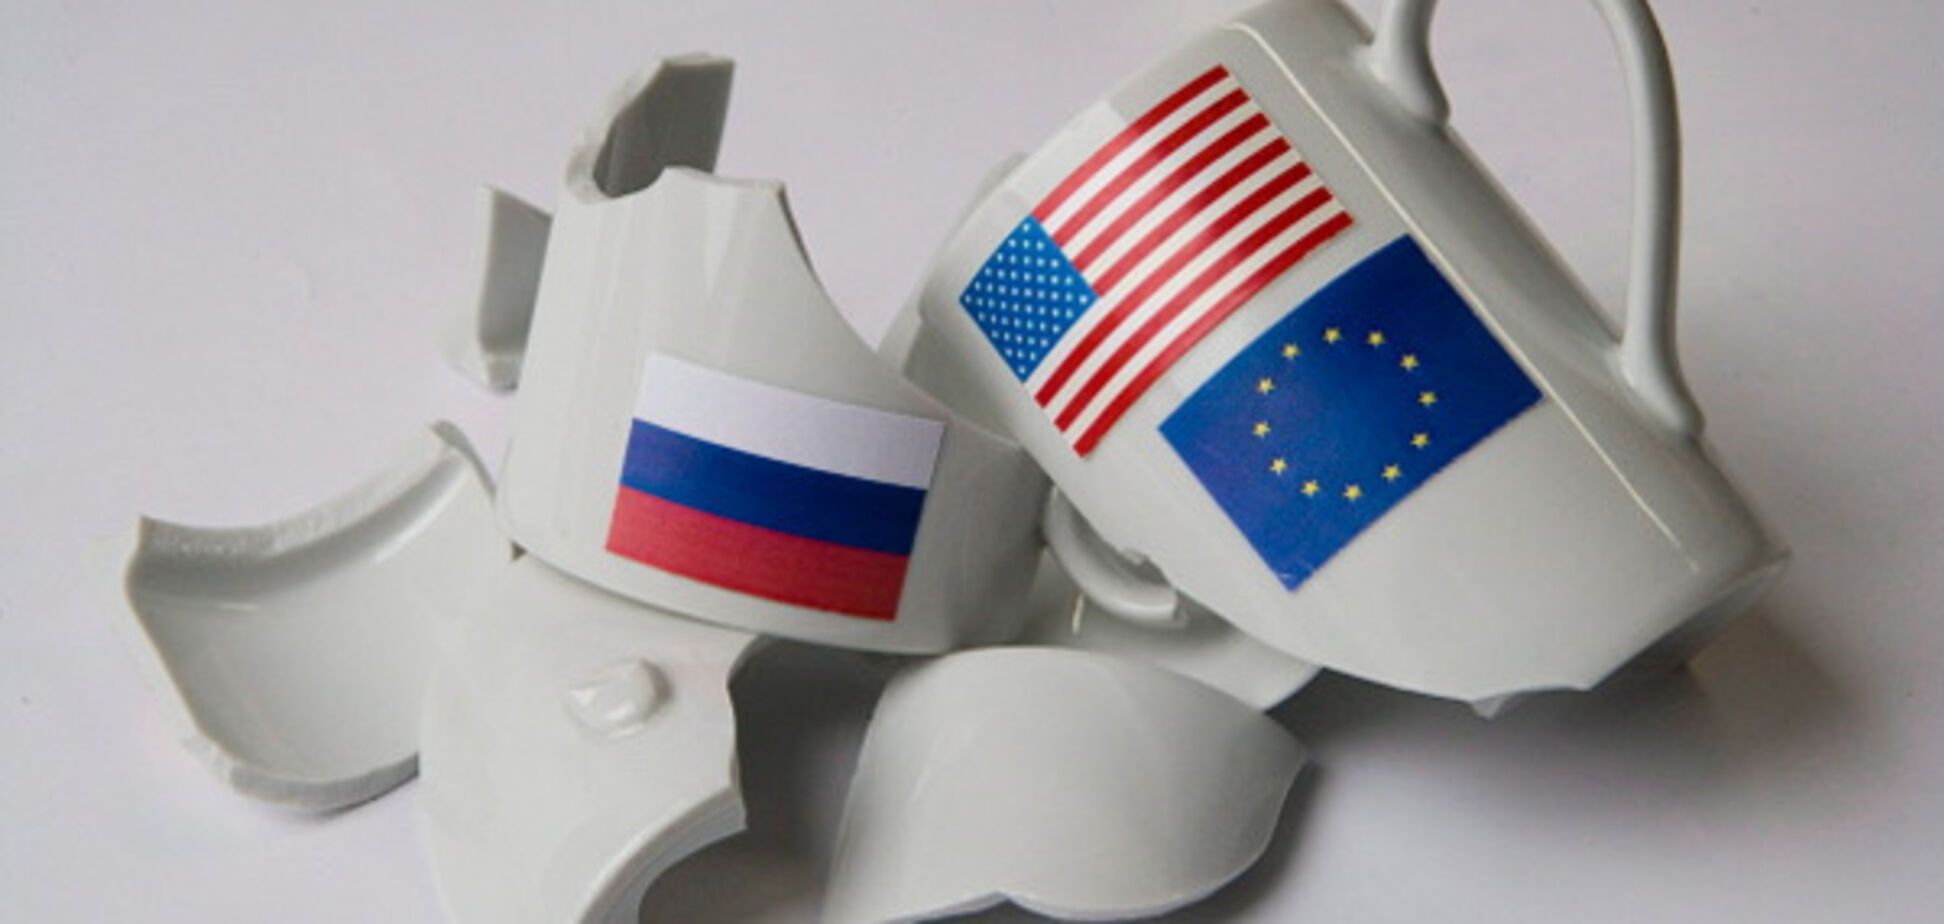 Хорошая мина при плохой игре: экономист объяснил 'ничтожность' санкций против России